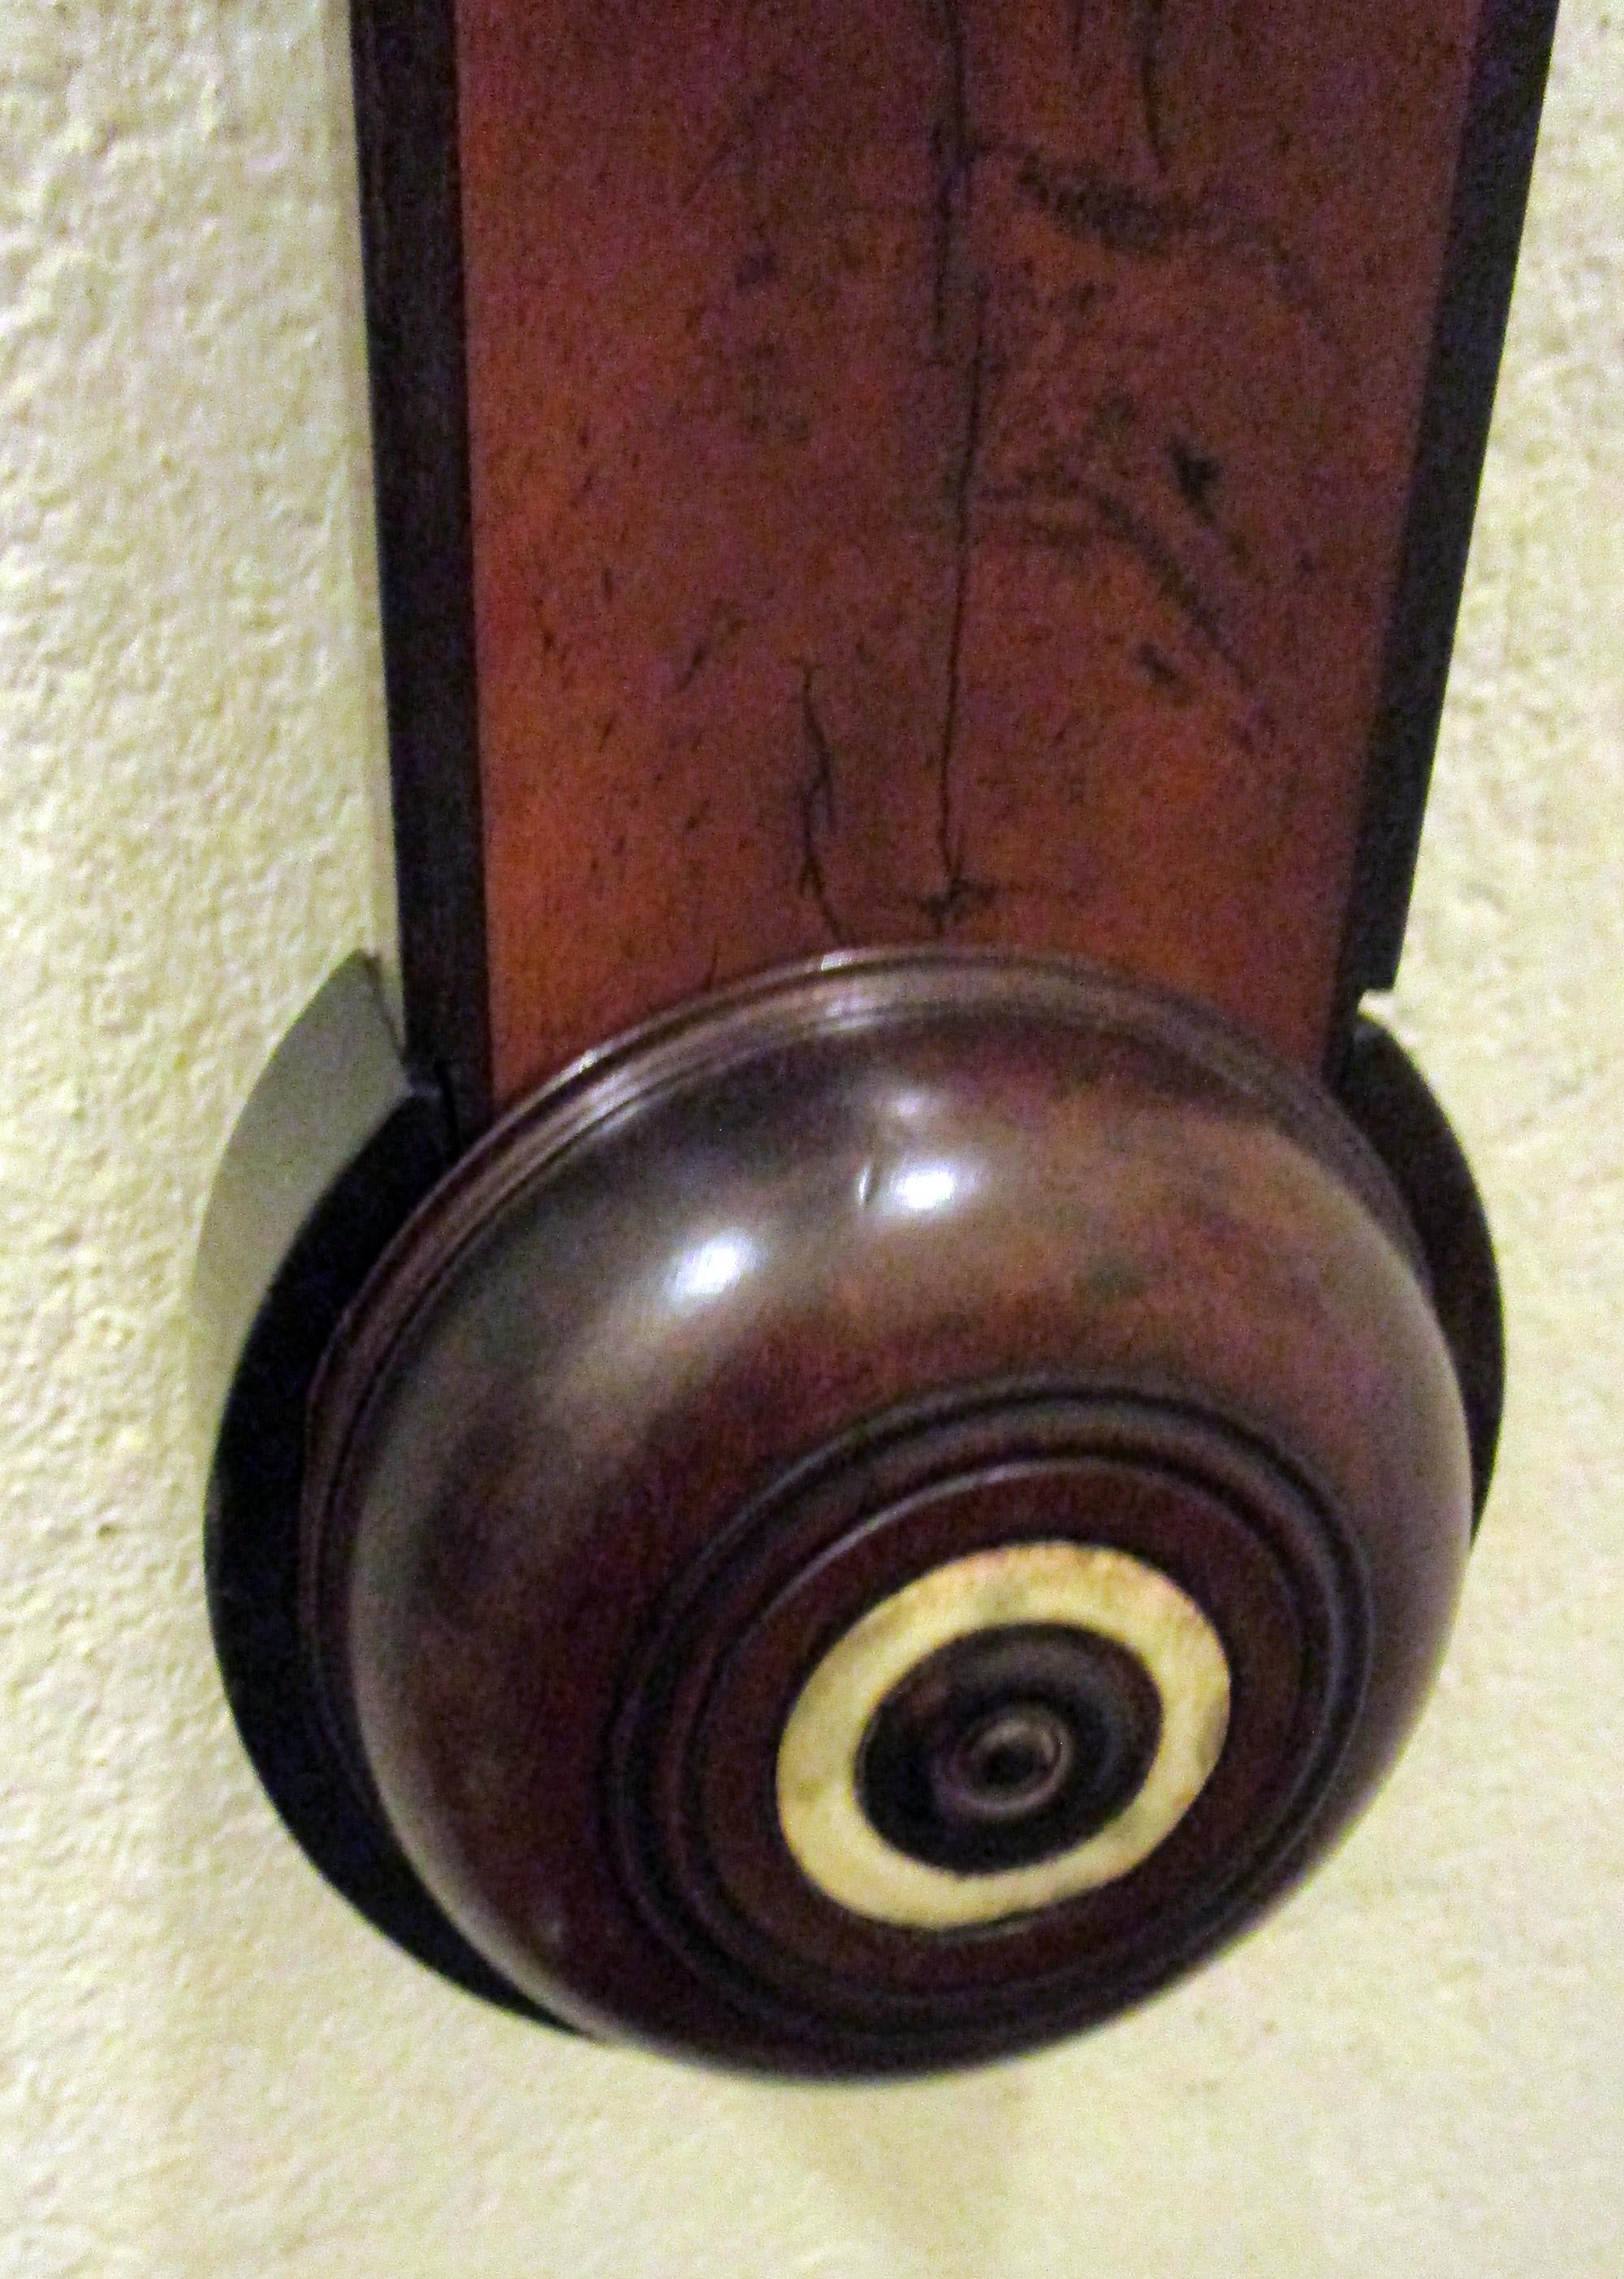 Stockbarometer signiert T. Taylor London mit Mahagonigehäuse mit Knochensockel, Intarsien und Knauf. Gebrochener Bogengiebel über einer verglasten Tür, in der sich ein Zählwerk und ein Thermometer befinden. Vollständig restauriert und kalibriert von